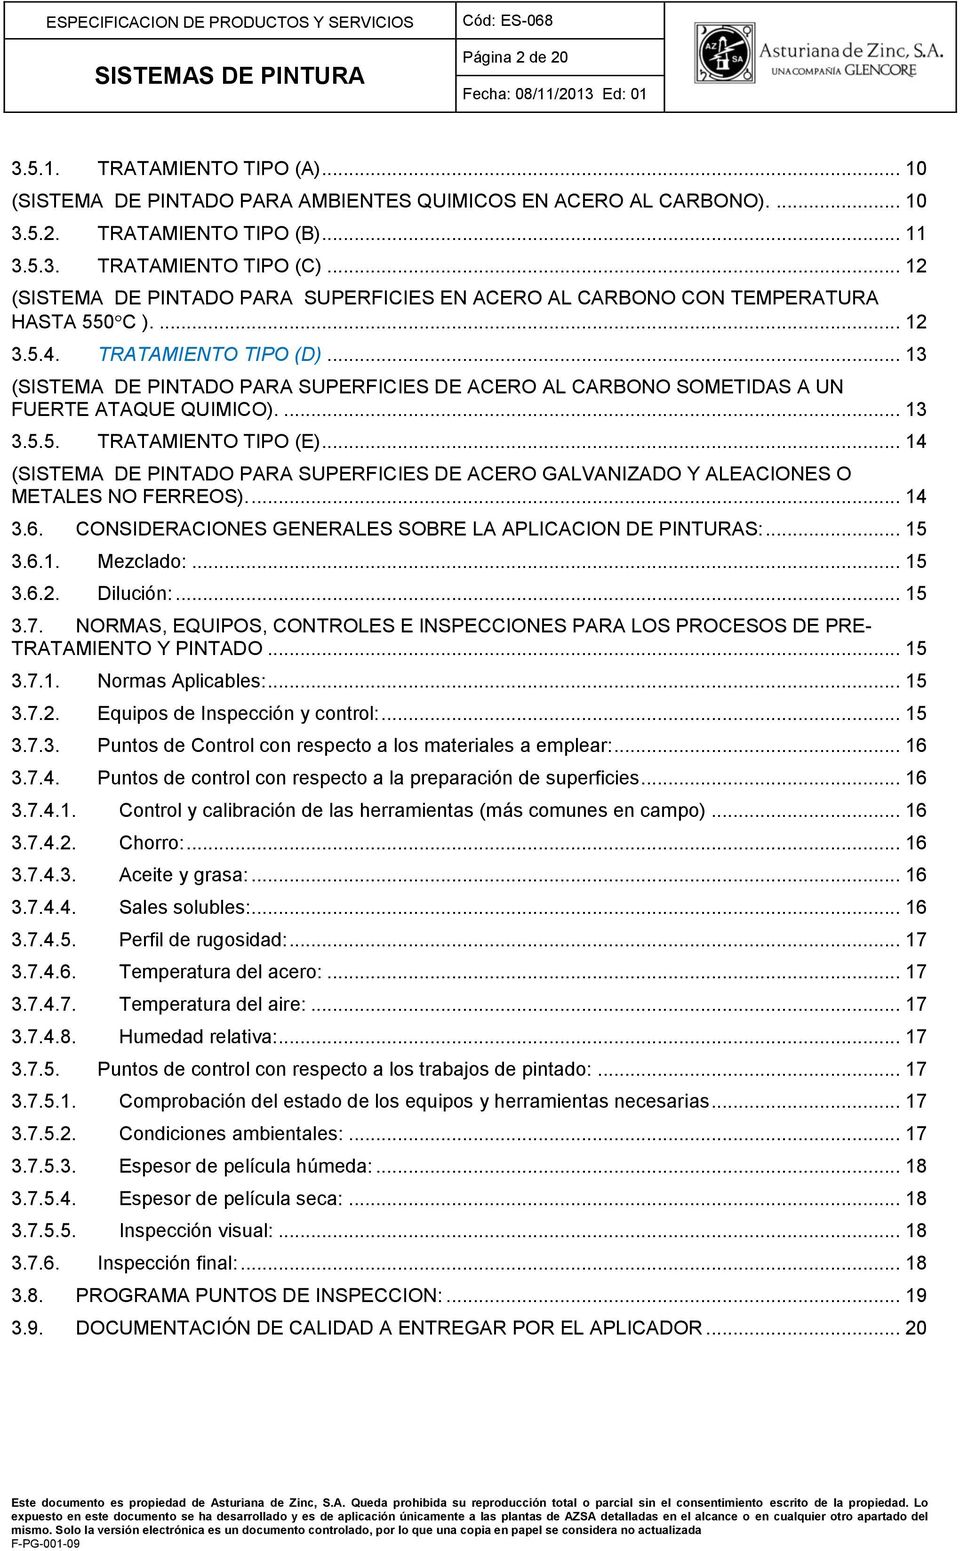 .. 13 (SISTEMA DE PINTADO PARA SUPERFICIES DE ACERO AL CARBONO SOMETIDAS A UN FUERTE ATAQUE QUIMICO).... 13 3.5.5. TRATAMIENTO TIPO (E).